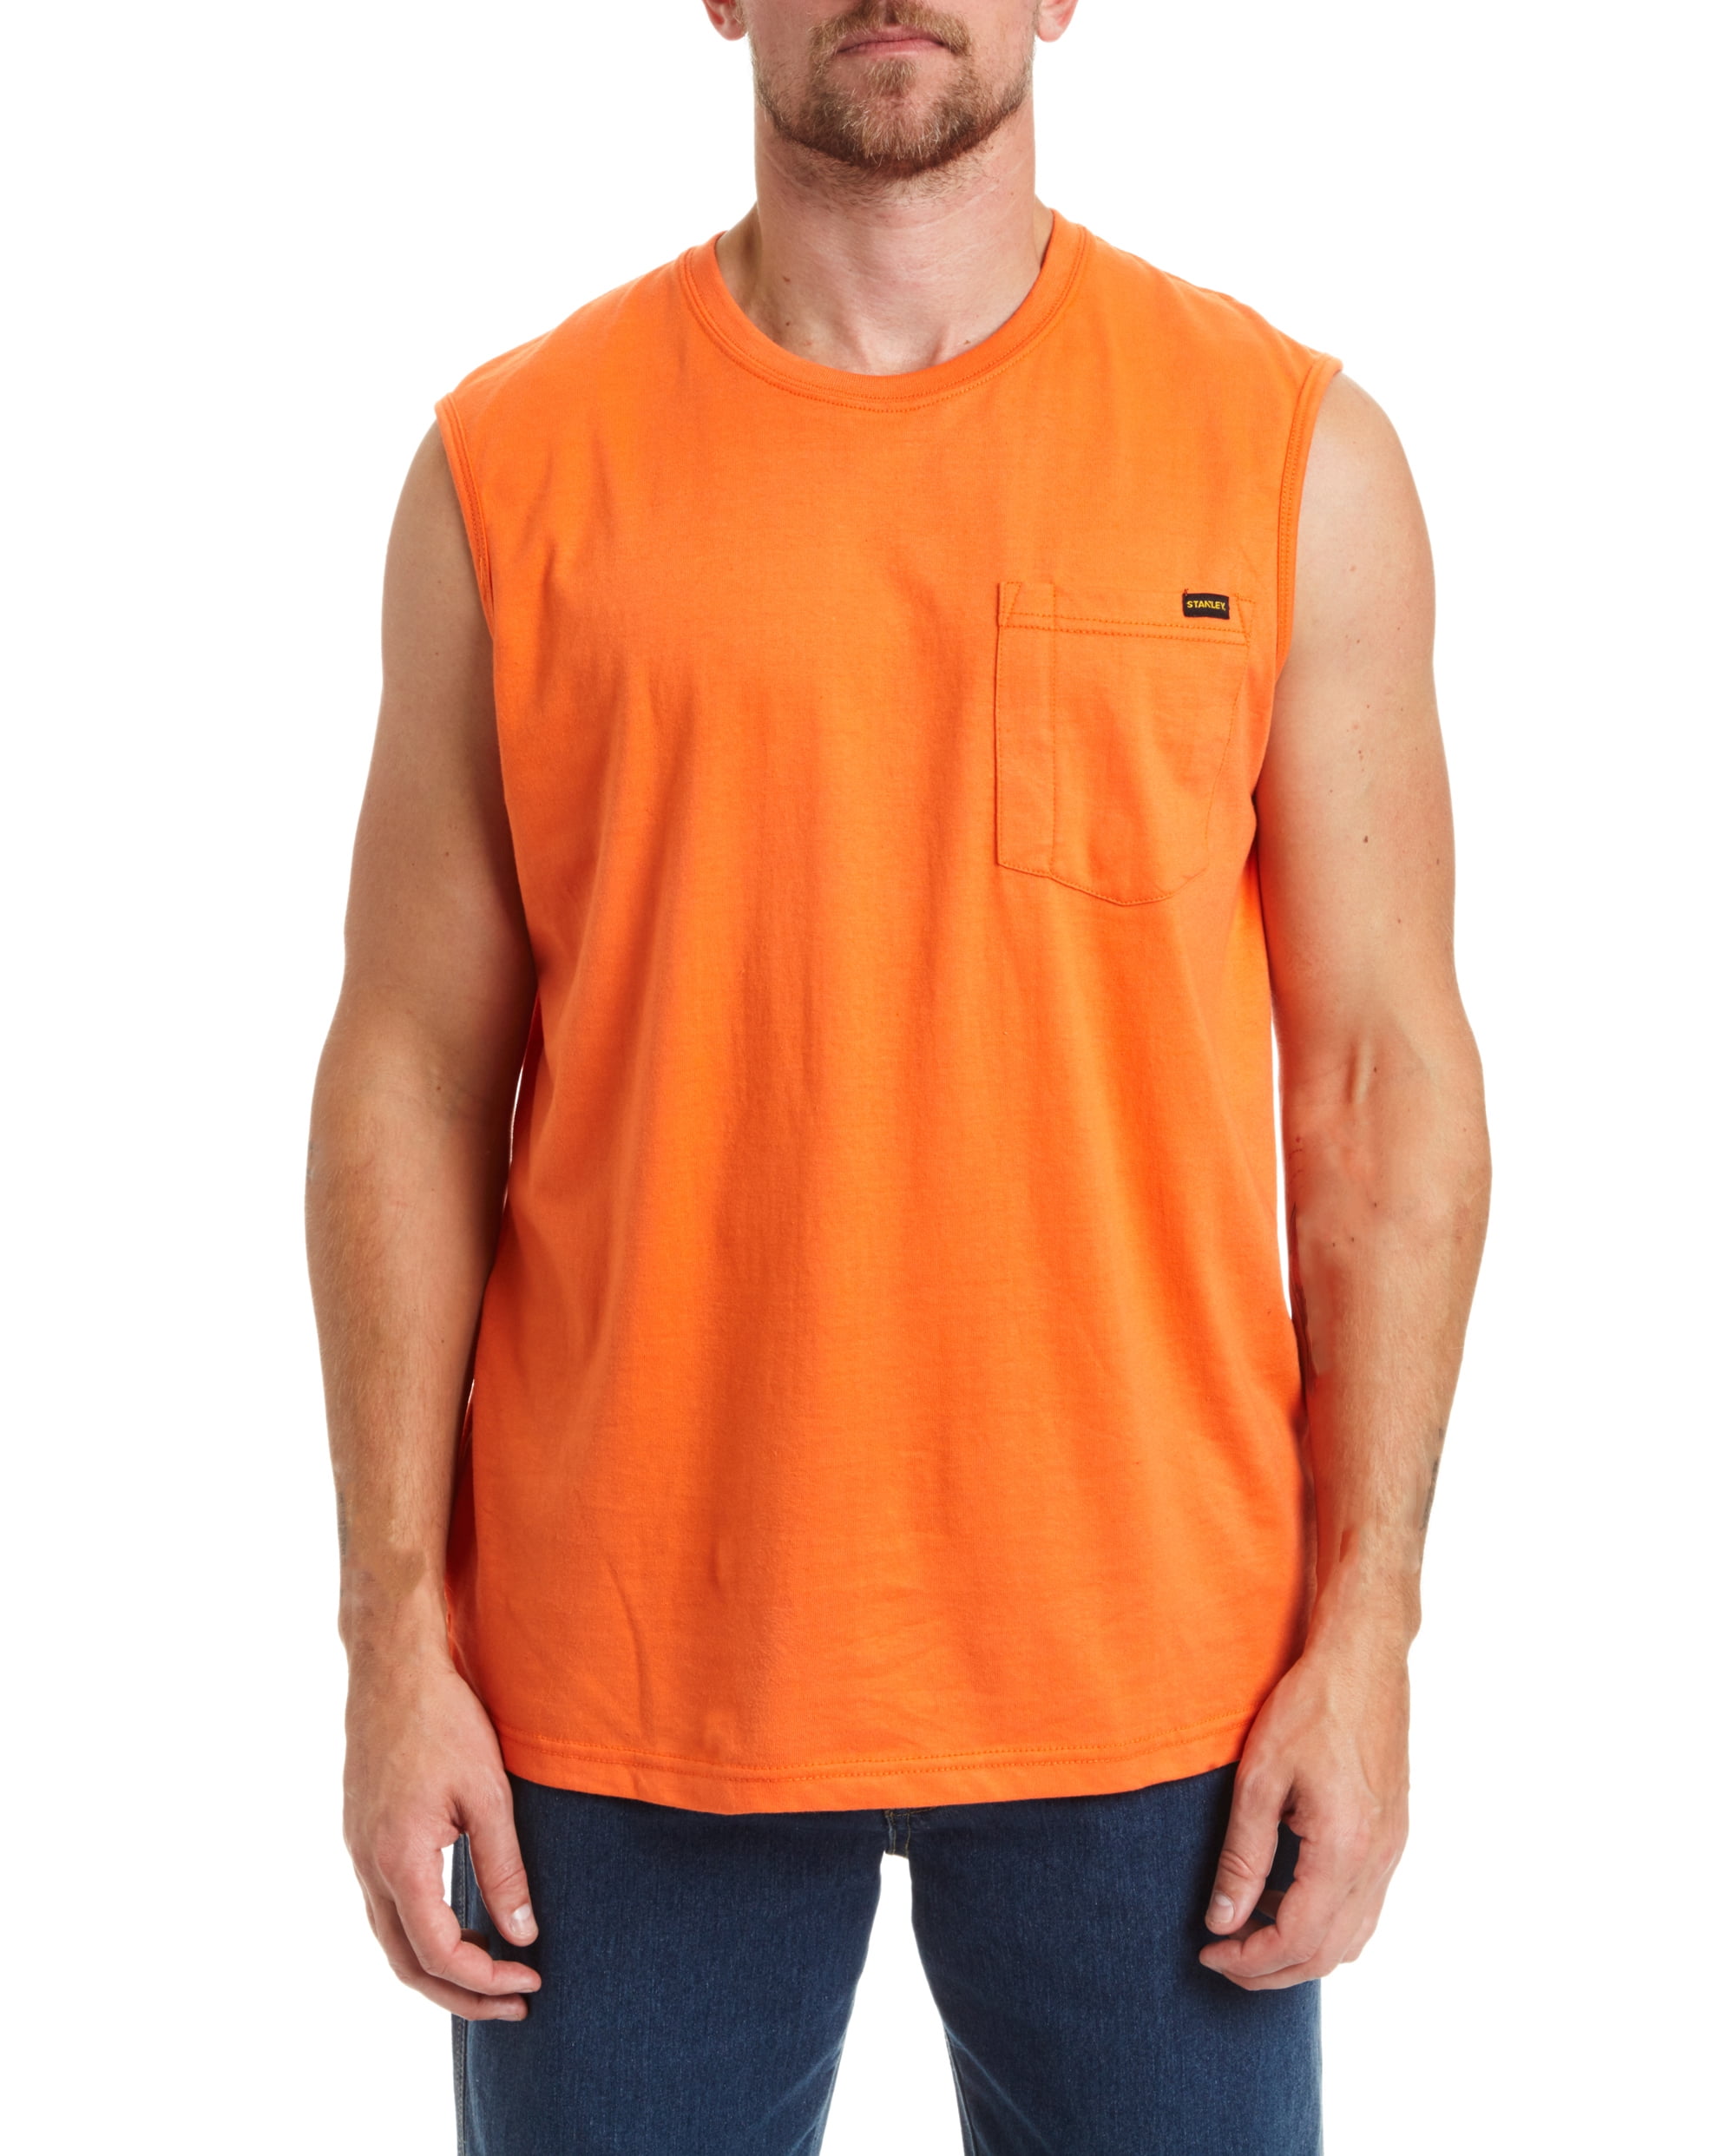 Men's Sleeveless Tee Shirt - Walmart.com